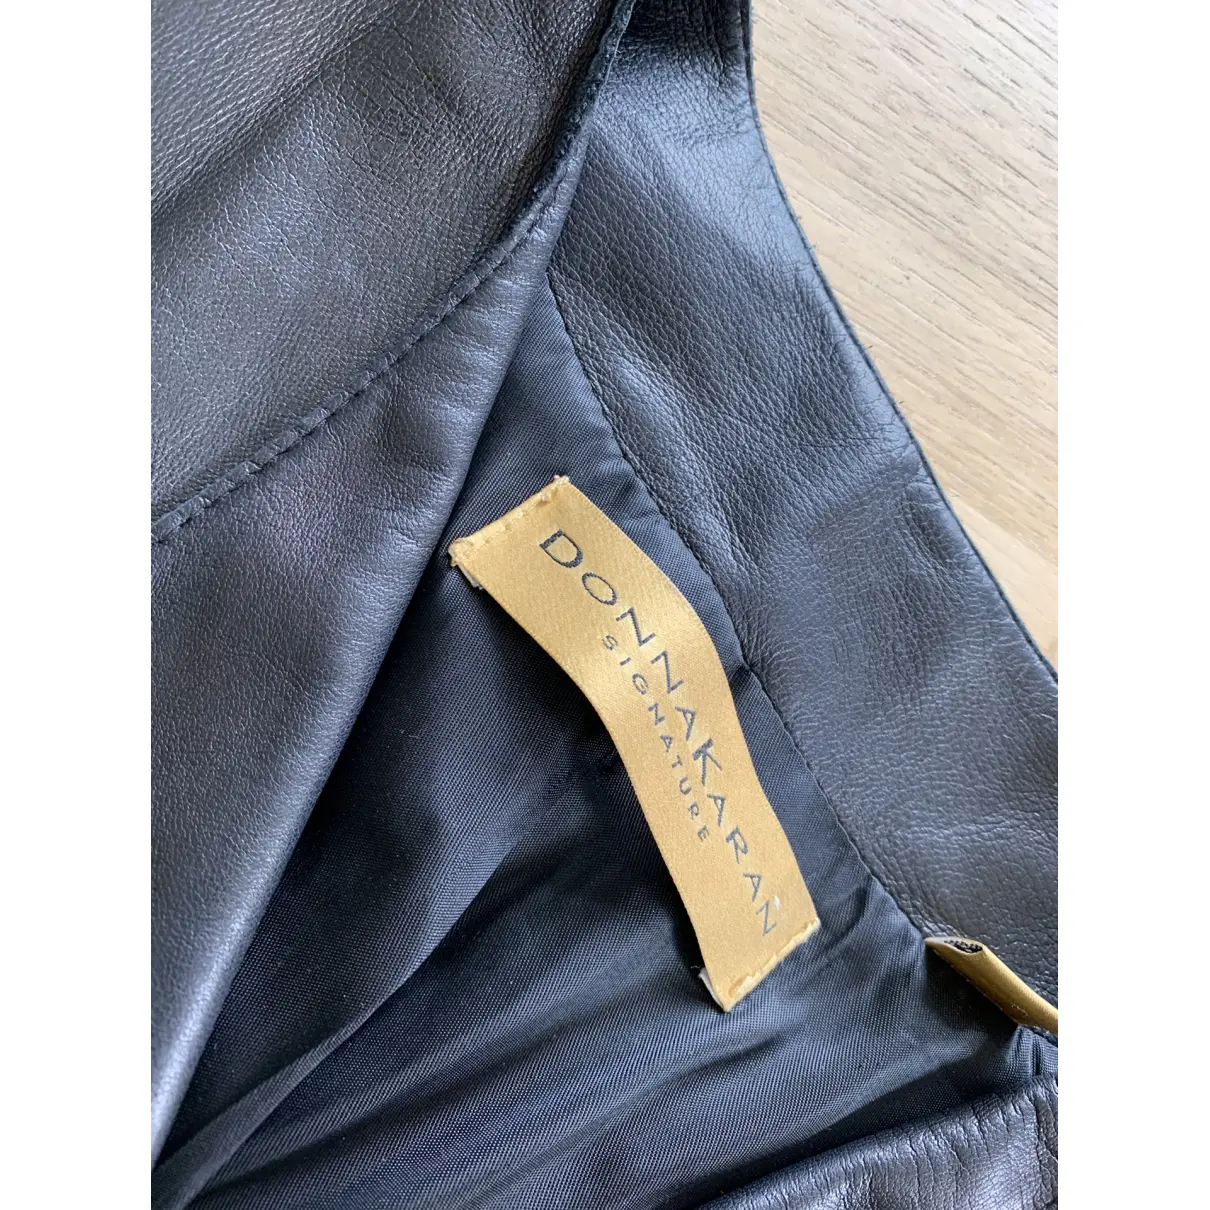 Buy Donna Karan Leather jacket online